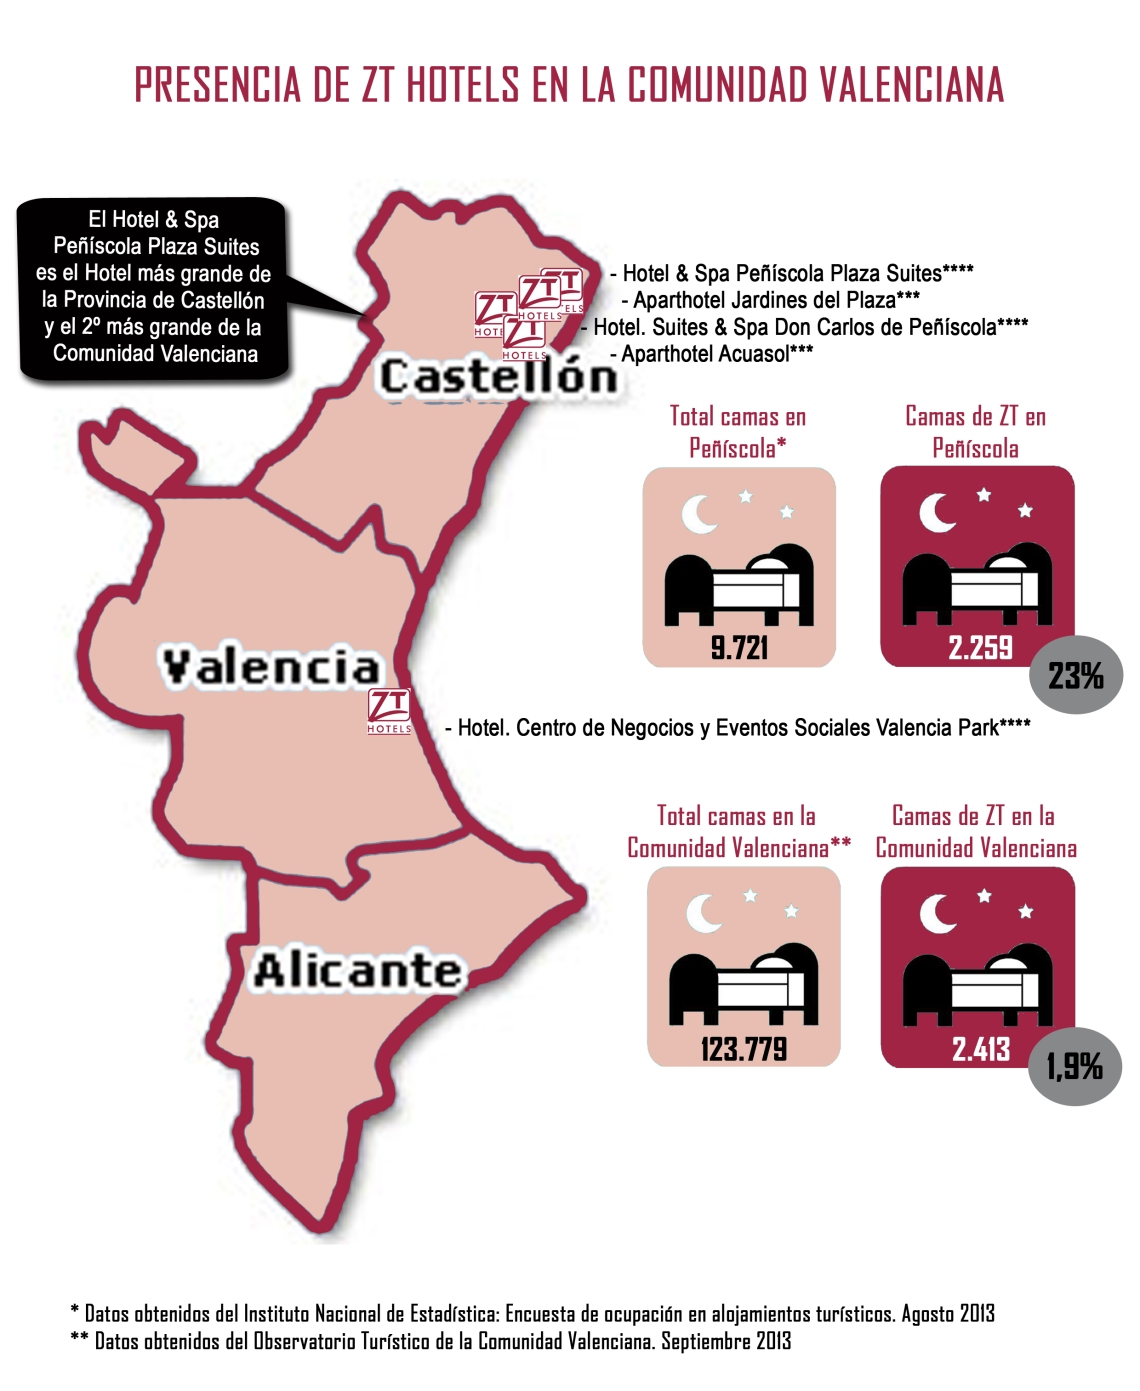 9 de Octubre - ¡Feliz Día de la Comunidad Valenciana!